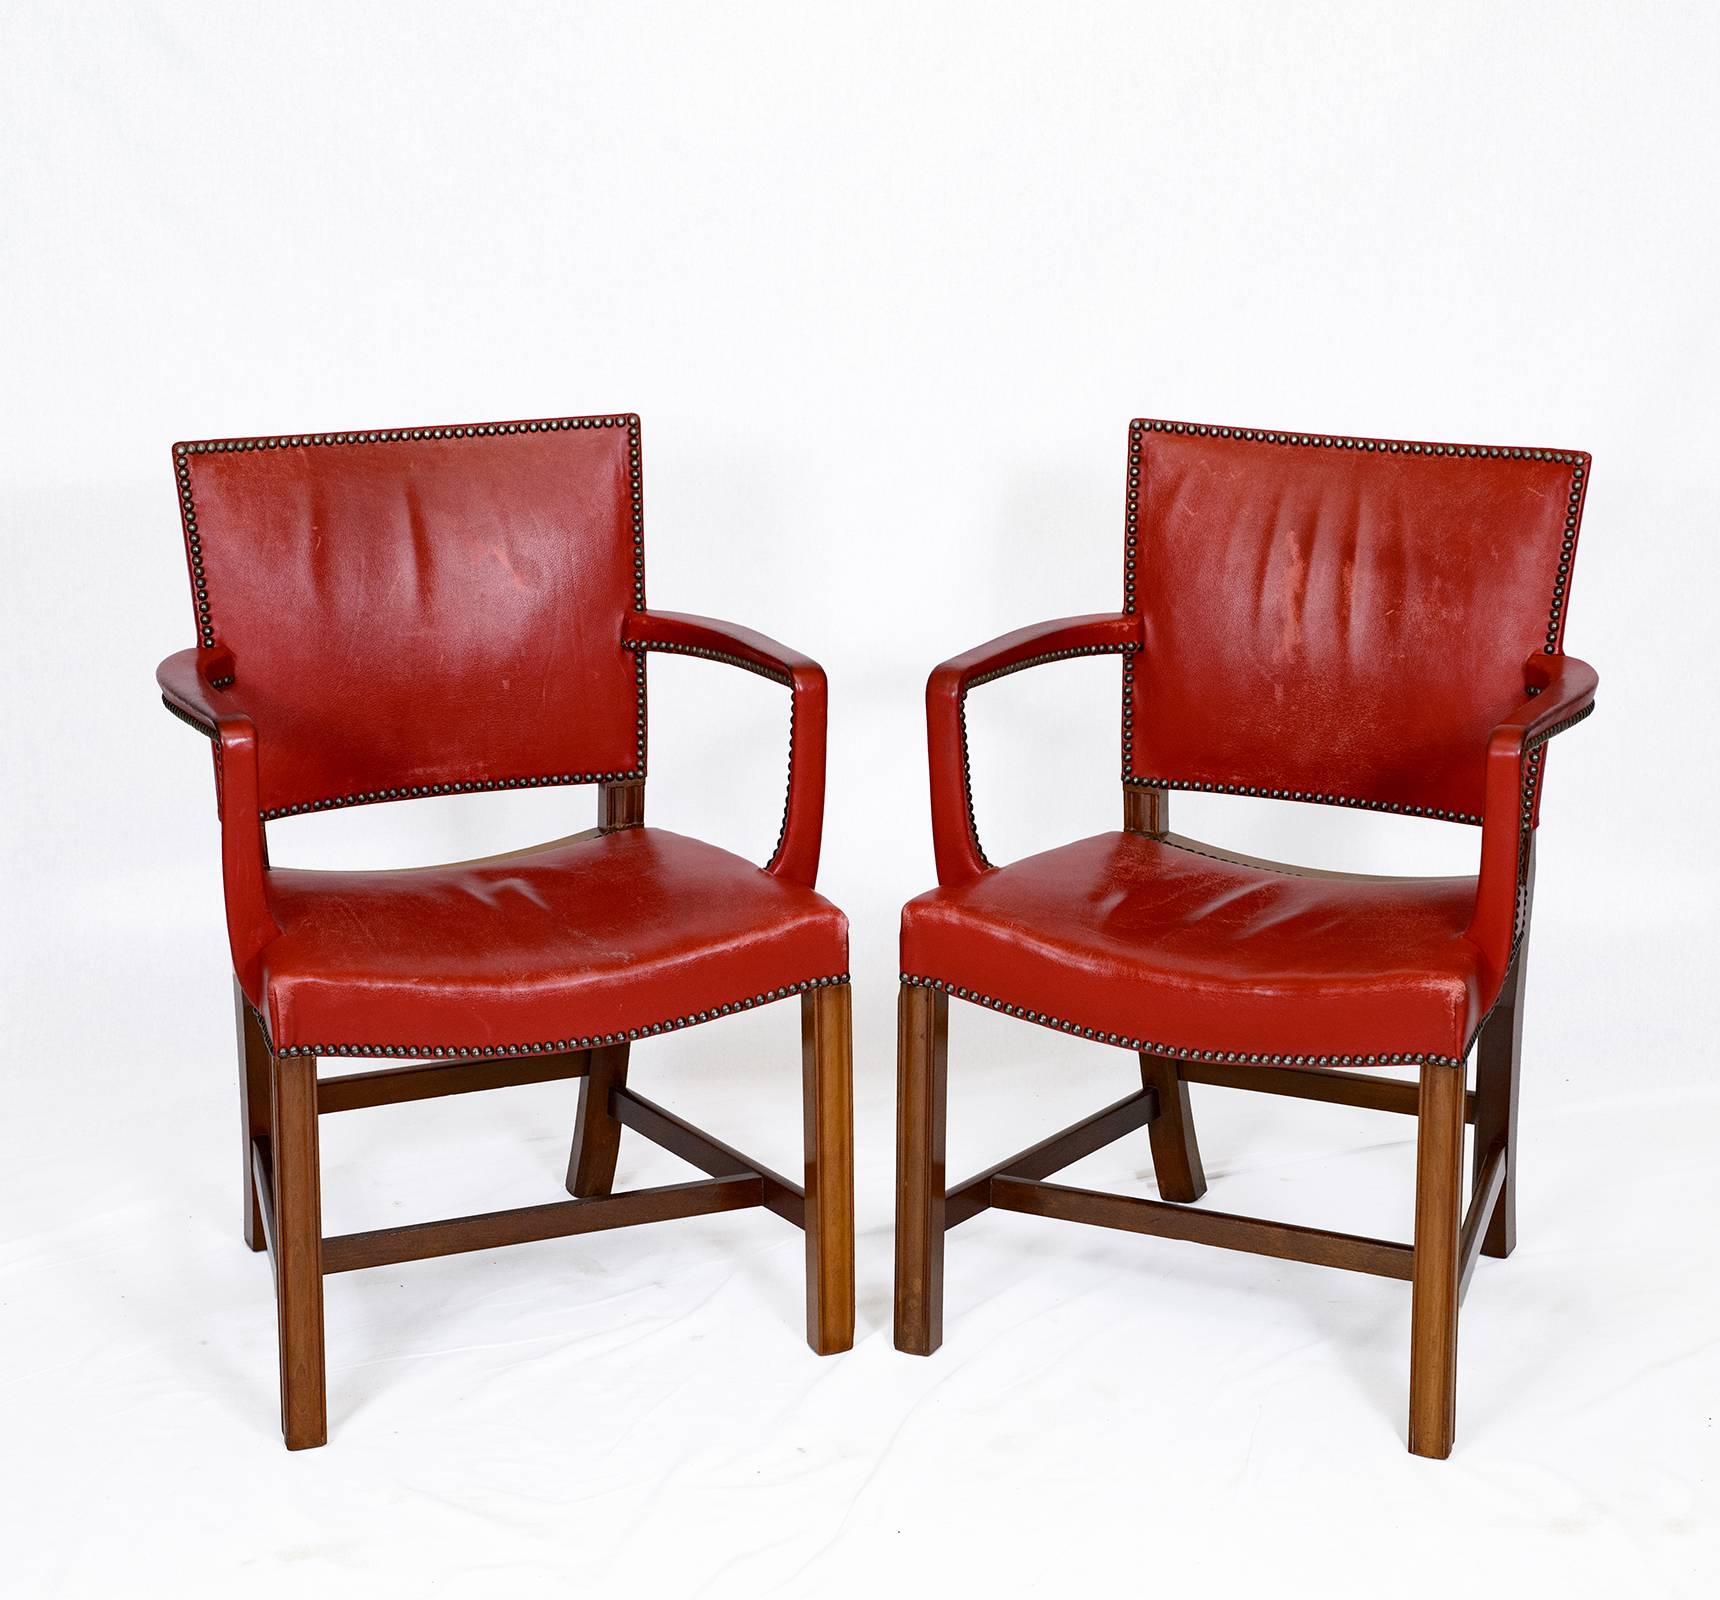 Paire de fauteuils Kaare Klint conçus en 1927 et produits par Rud Rasmussen.    Magasin anciennement connu sous le nom de ARTFUL DODGER INC